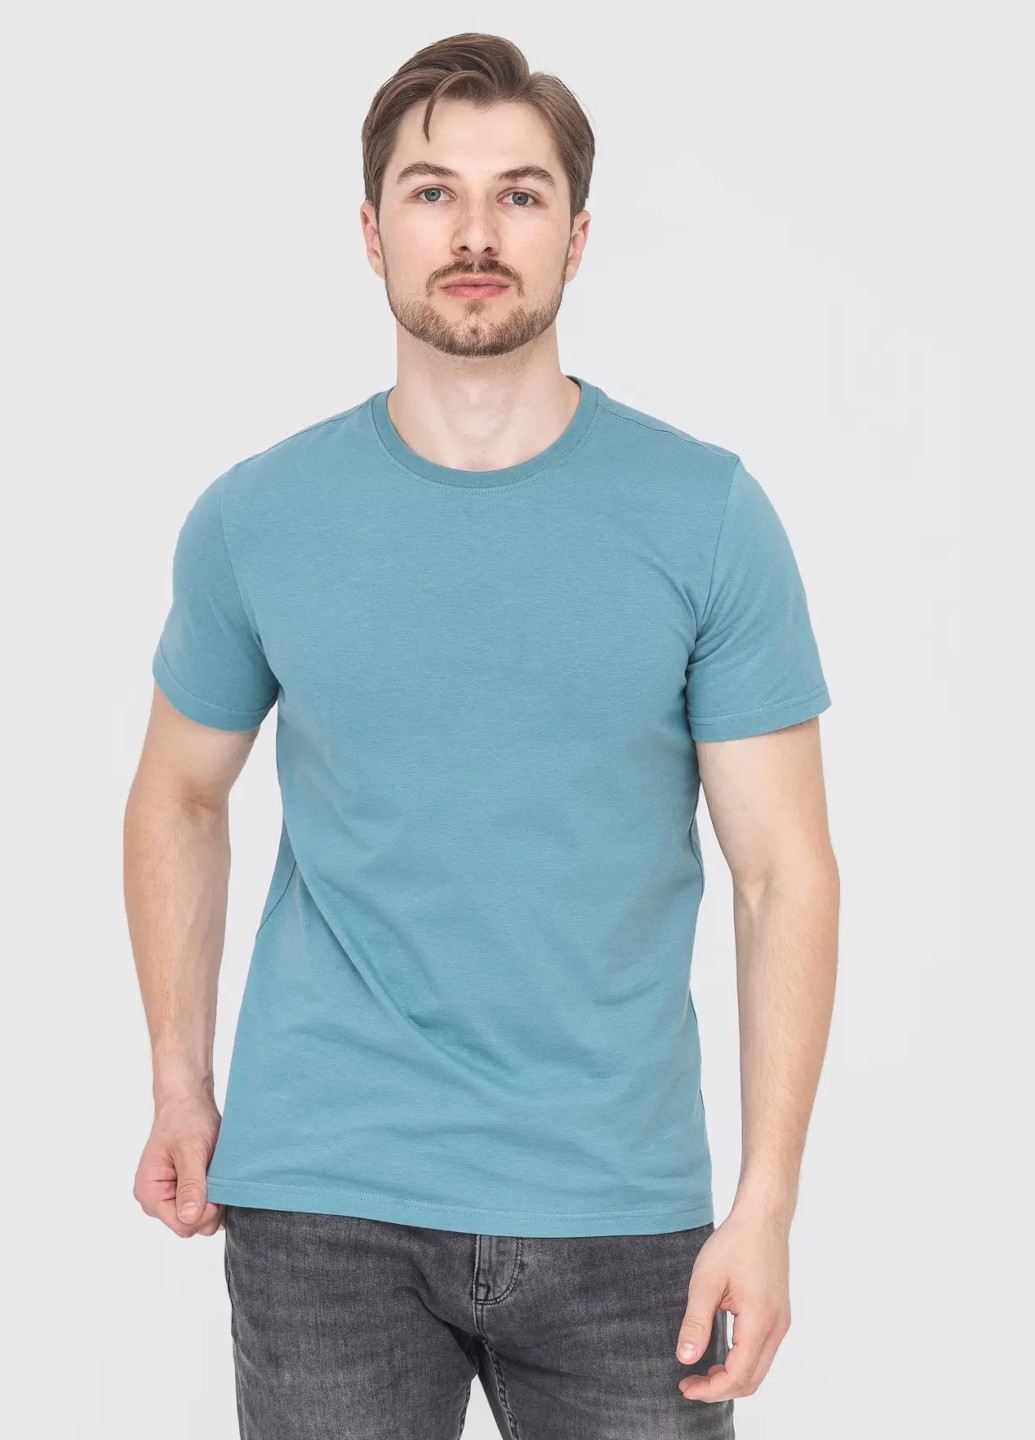 Сіро-голубий футболка чоловіча з коротким рукавом Роза